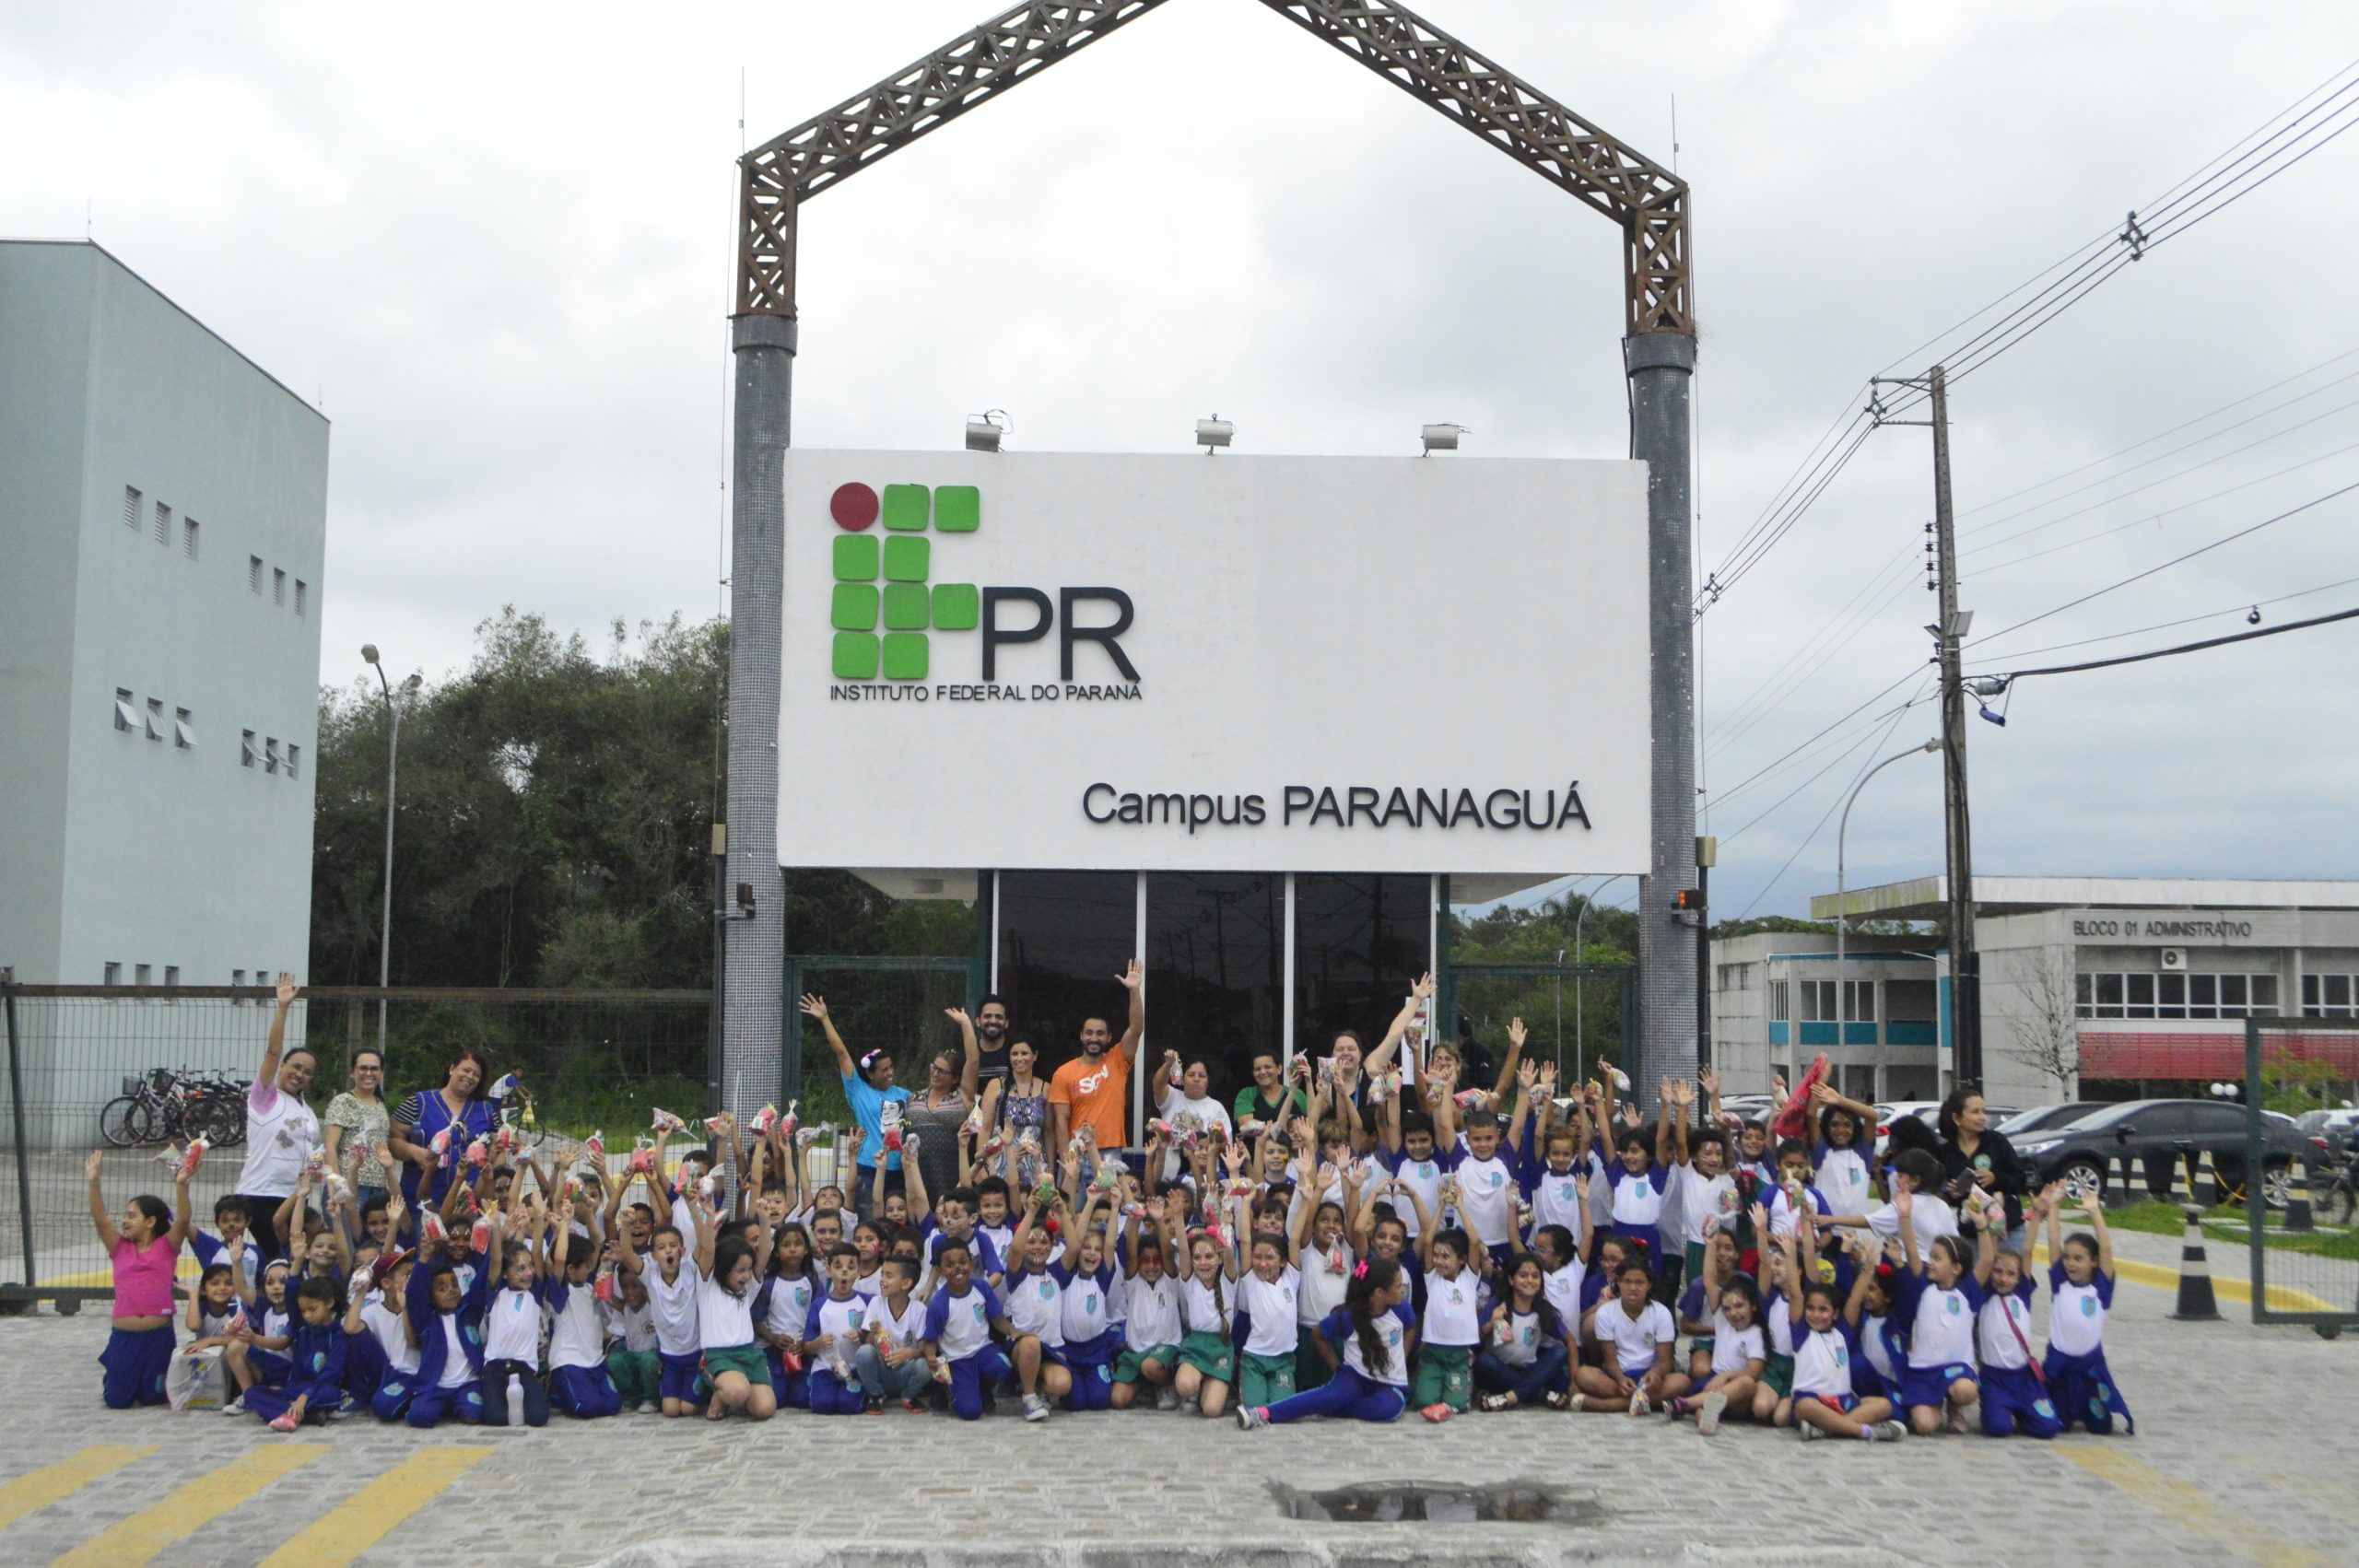 Anime IFPR acontece no dia 23/09 – Campus Paranaguá